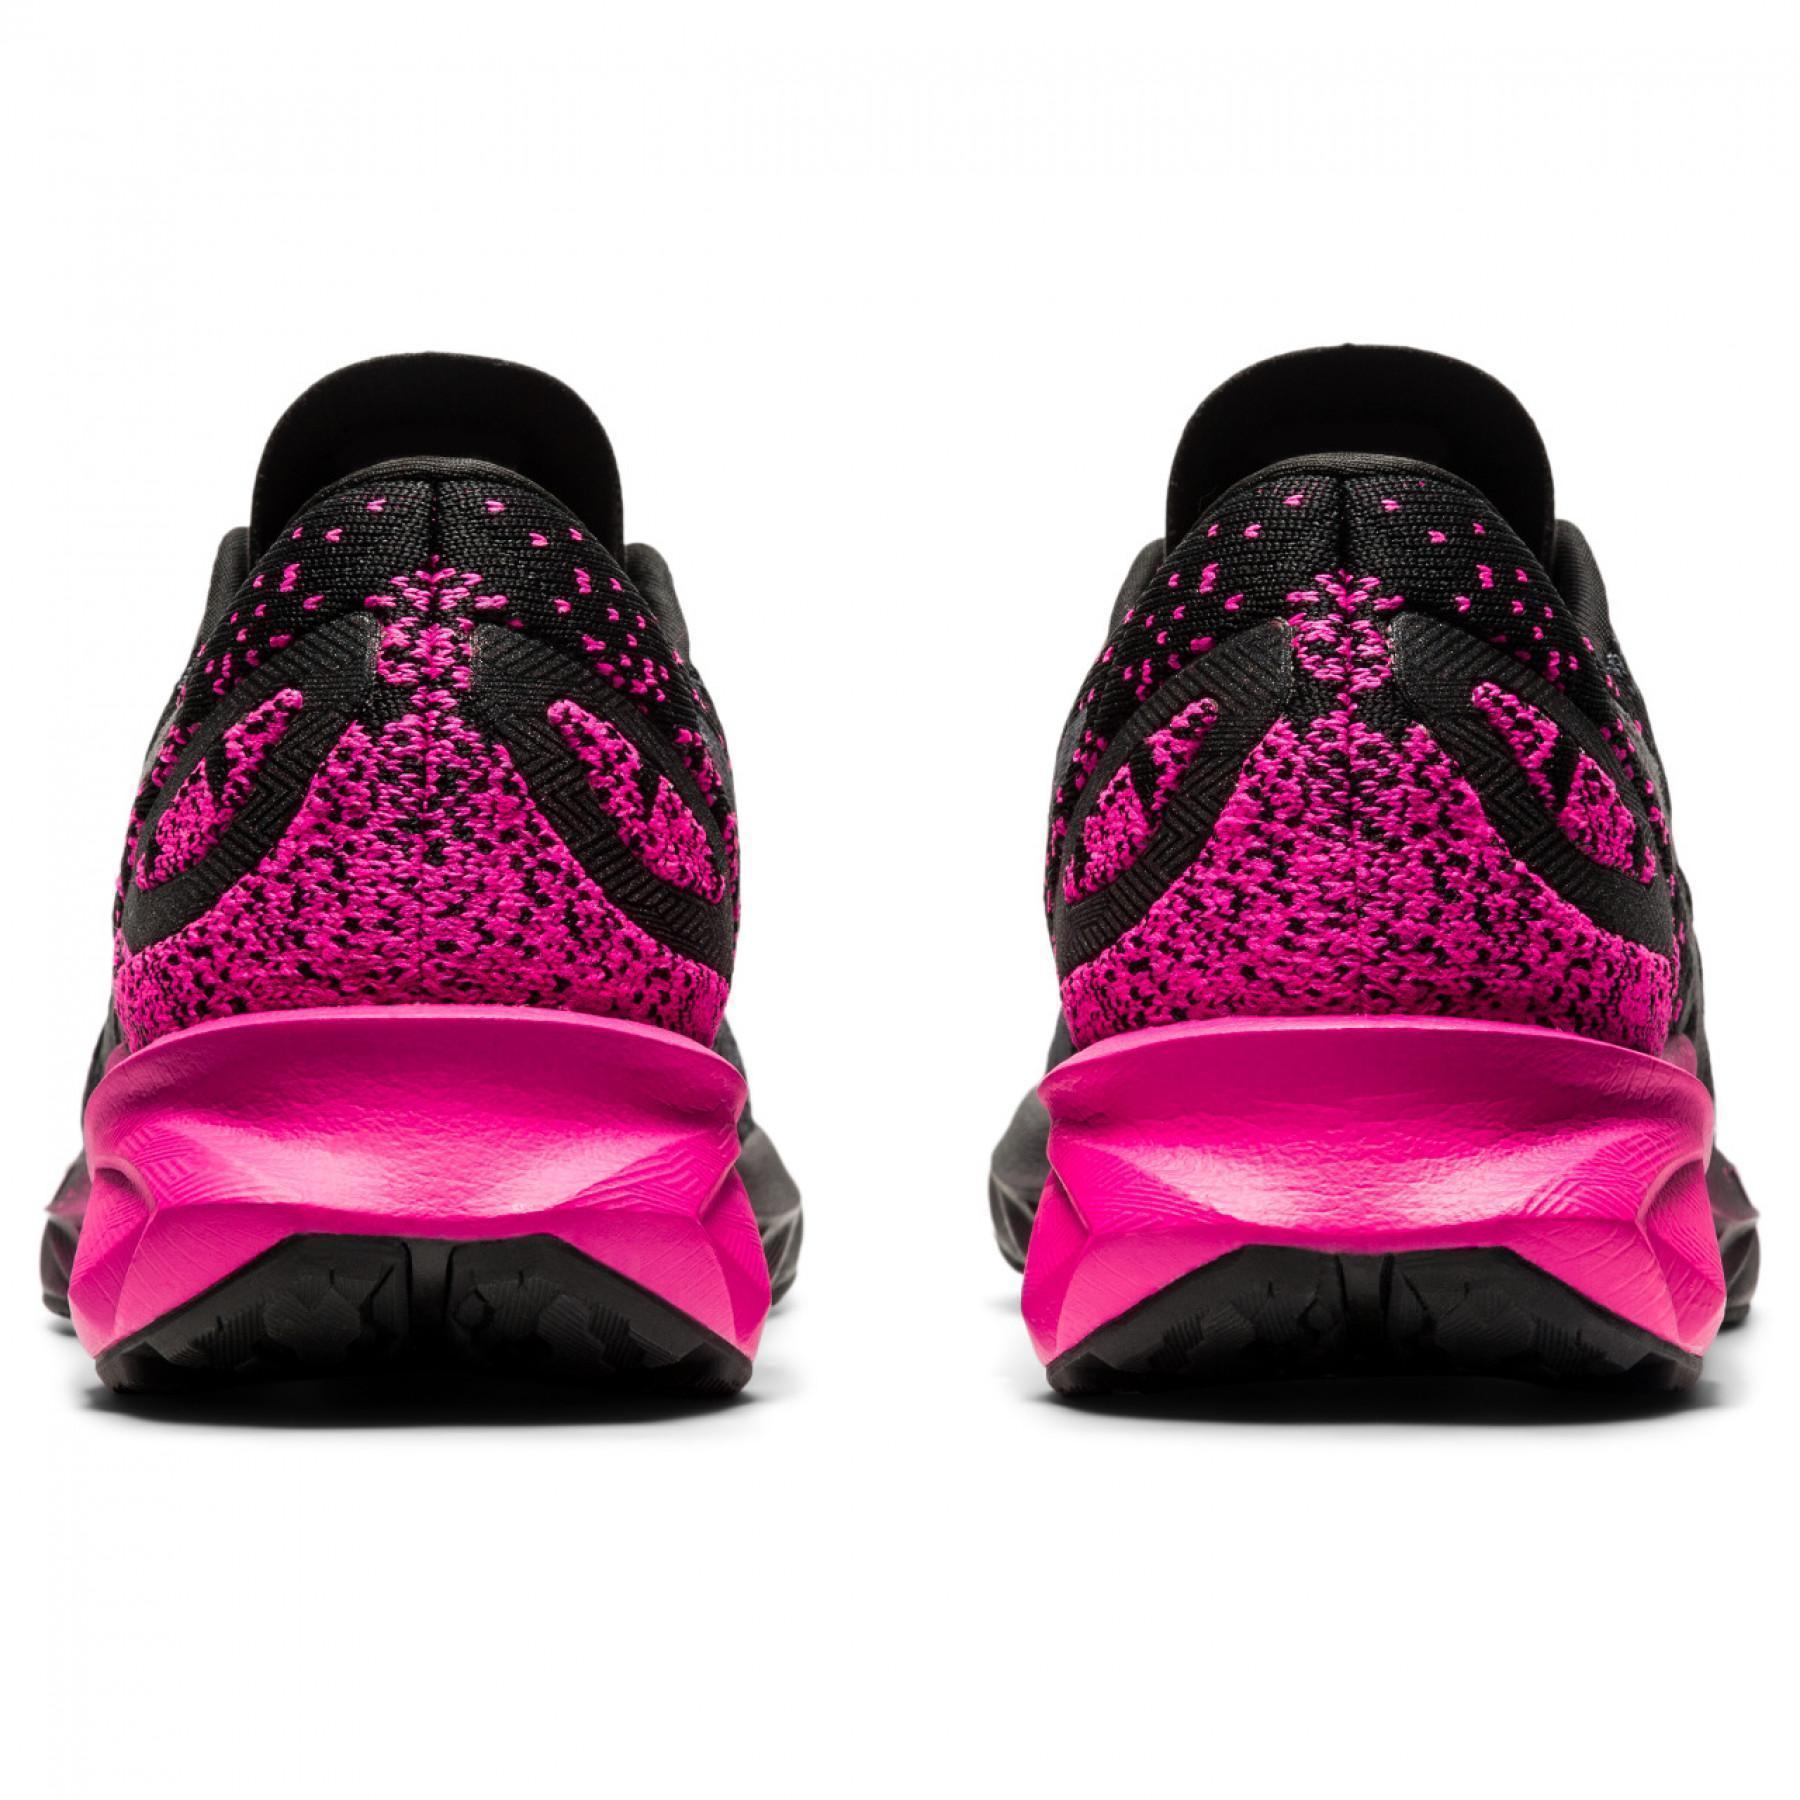 Chaussures de running femme Asics Dynablast